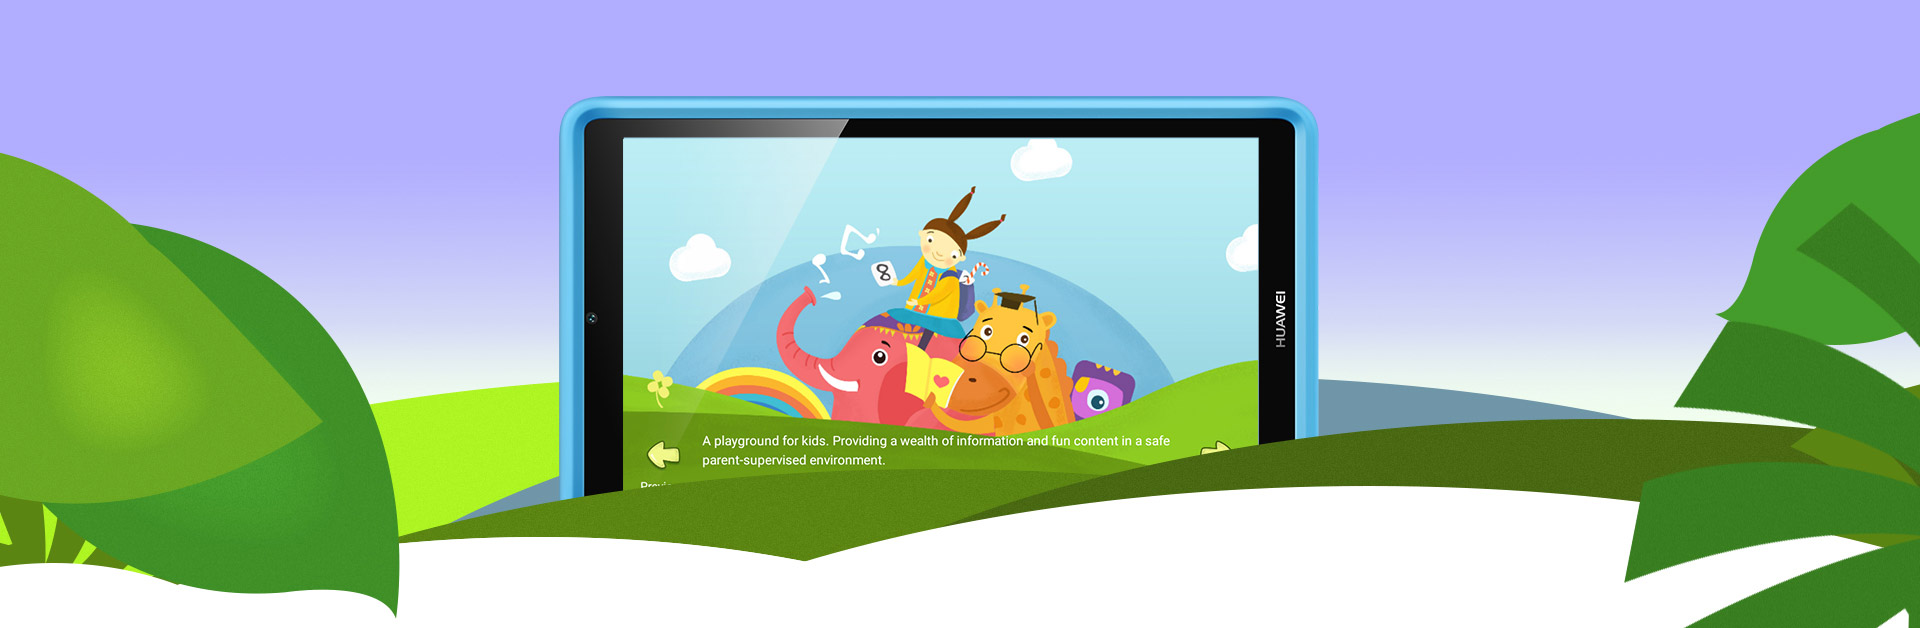 إطلاق جوجل لوضع Kids Mode لبعض أجهزة أندرويد